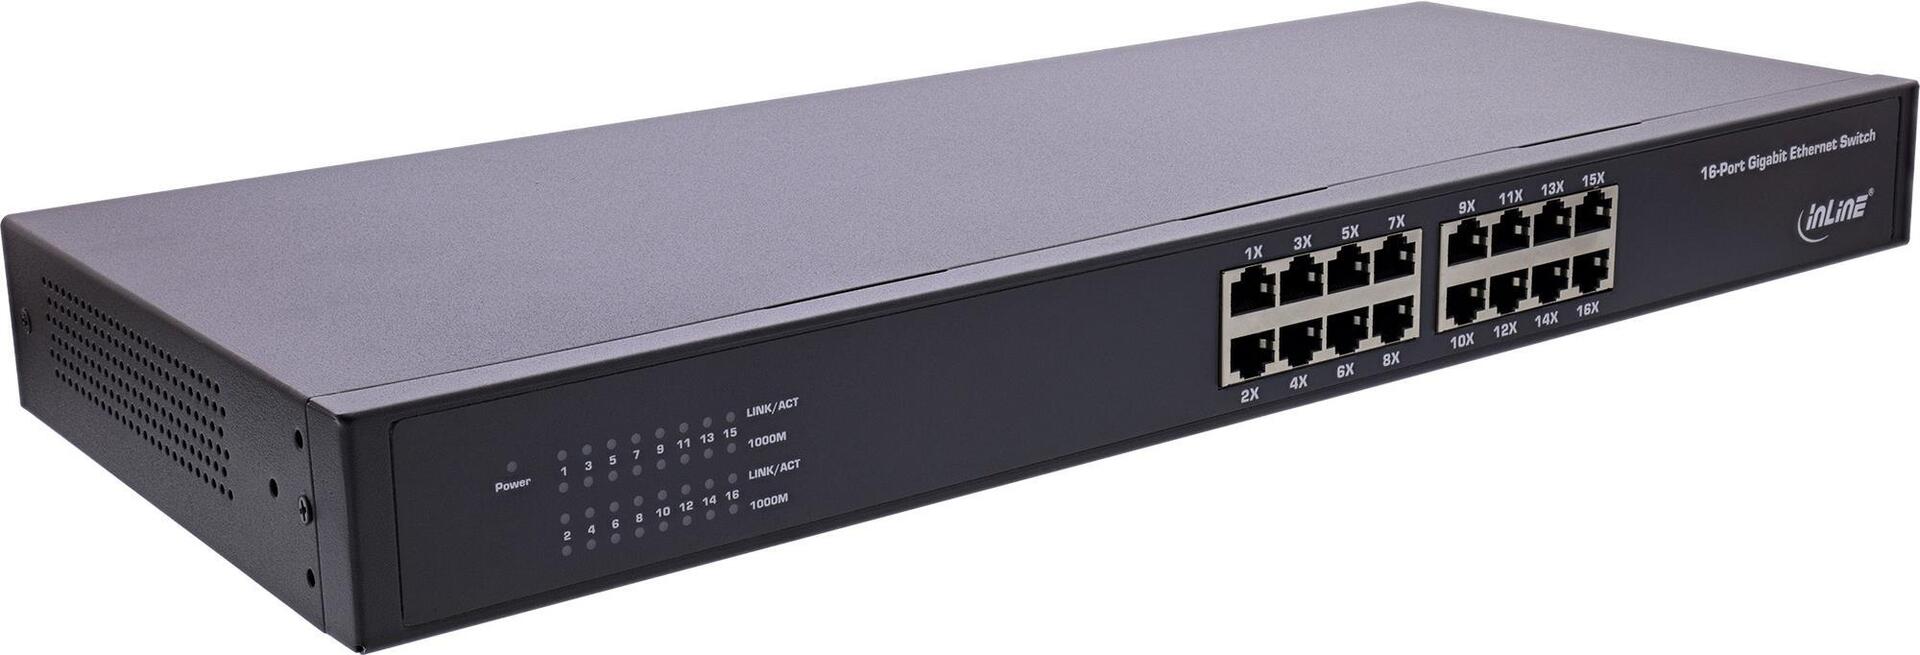 InLine® Gigabit Netzwerk Switch 16-Port, 1GBit/s, 48,26cm (19"), Metall, lüfterlos (32311O)